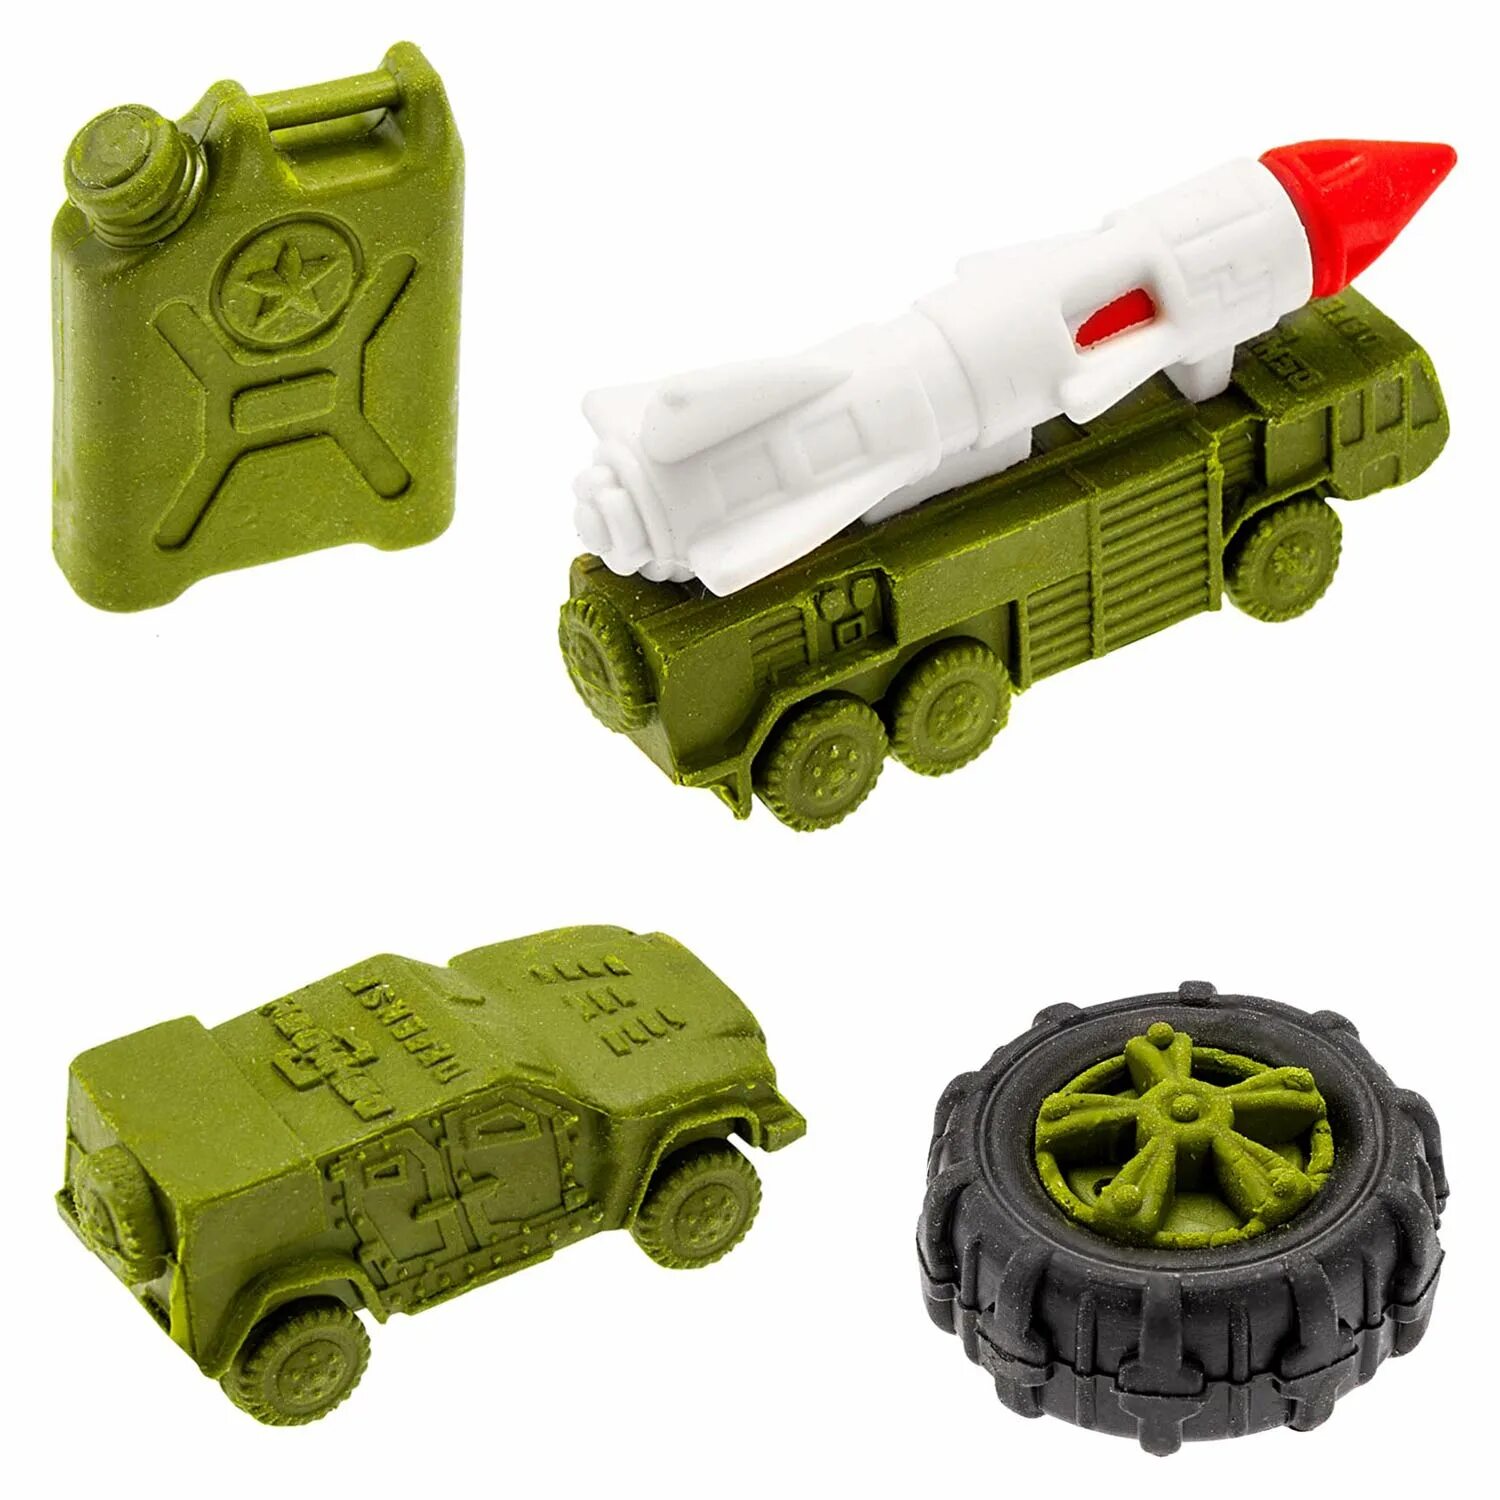 Подарки мальчикам на 23 февраля купить. Набор военной техники. Подарочный набор военной техники. Сувениры для мальчиков. Военные игрушки для мальчиков.